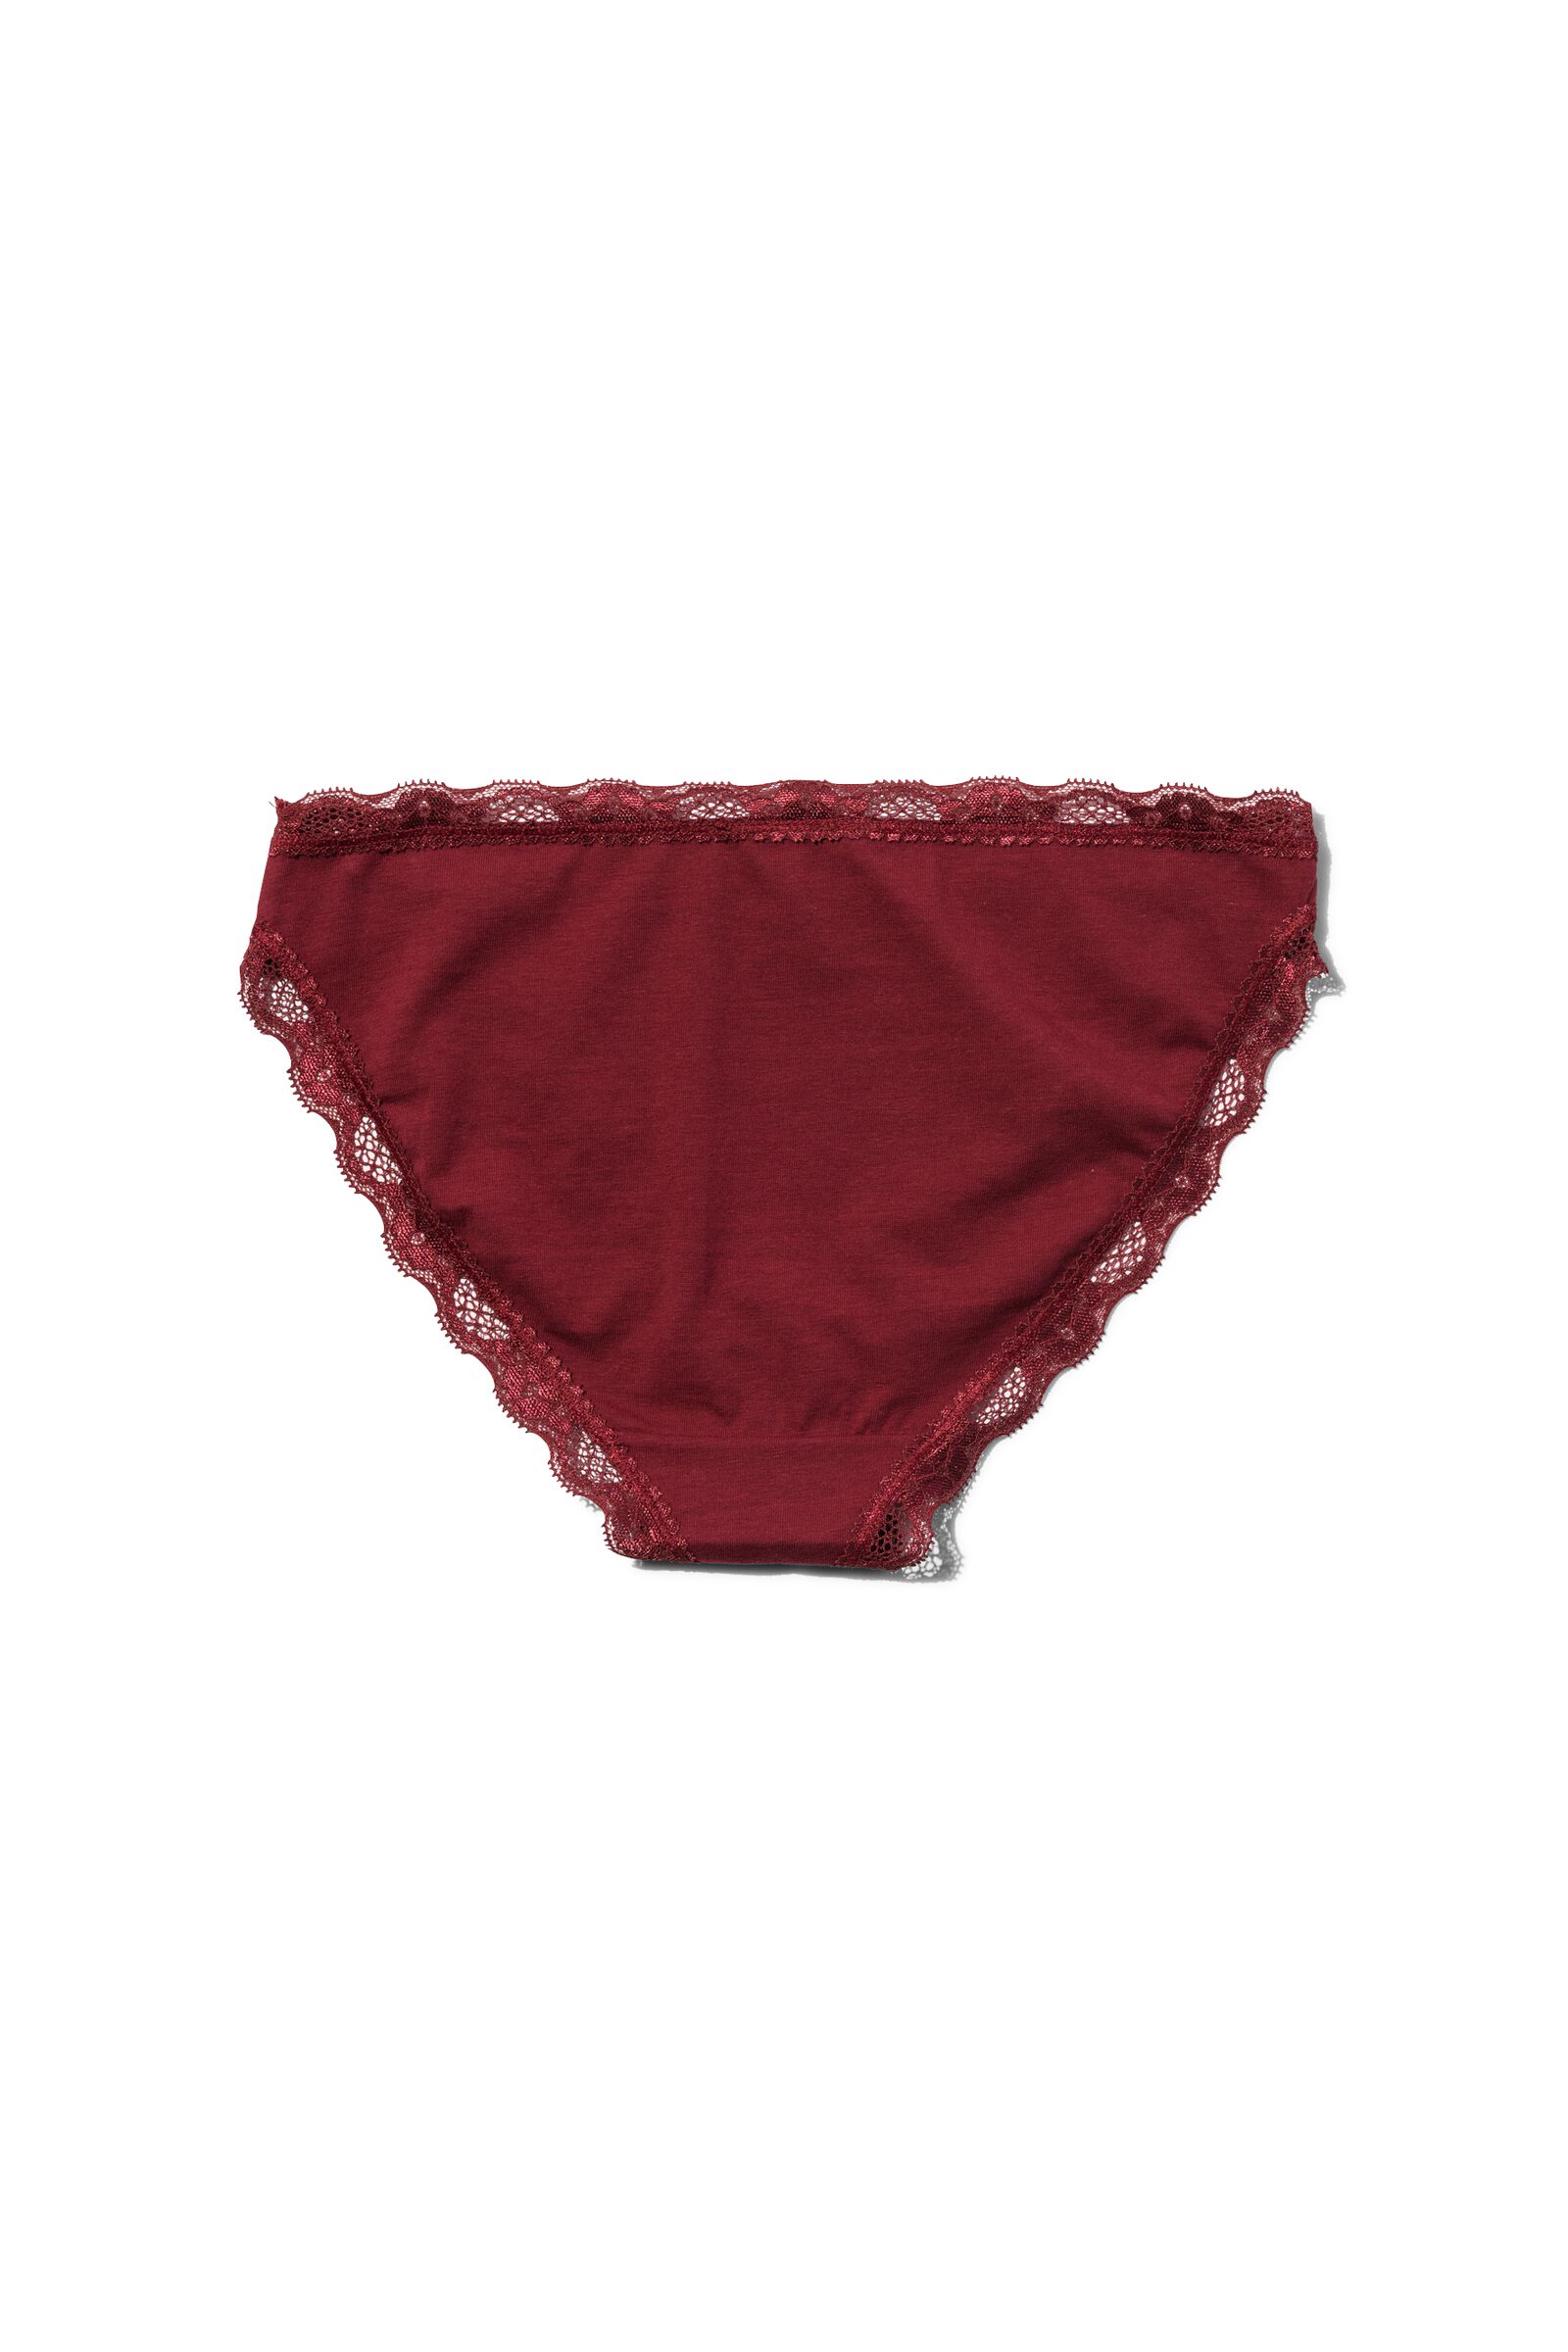 slip femme coton avec dentelle rouge foncé XL - 19610440 - HEMA